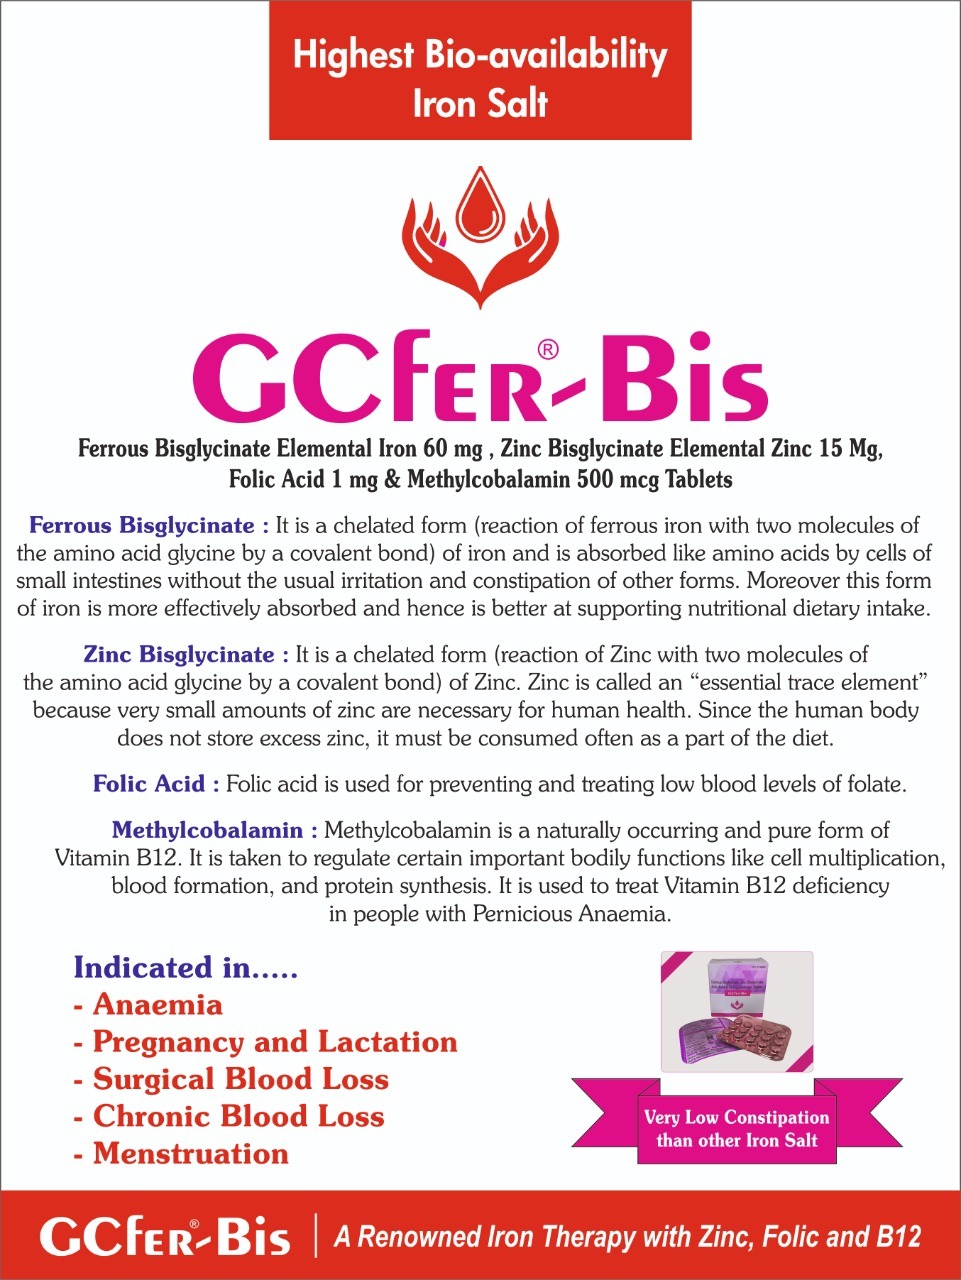 GCFER BIS TABLET - Ferrous Bisglycinate,Zinc bisglycinate,Folic Acid,Methylcobalamin Tablet